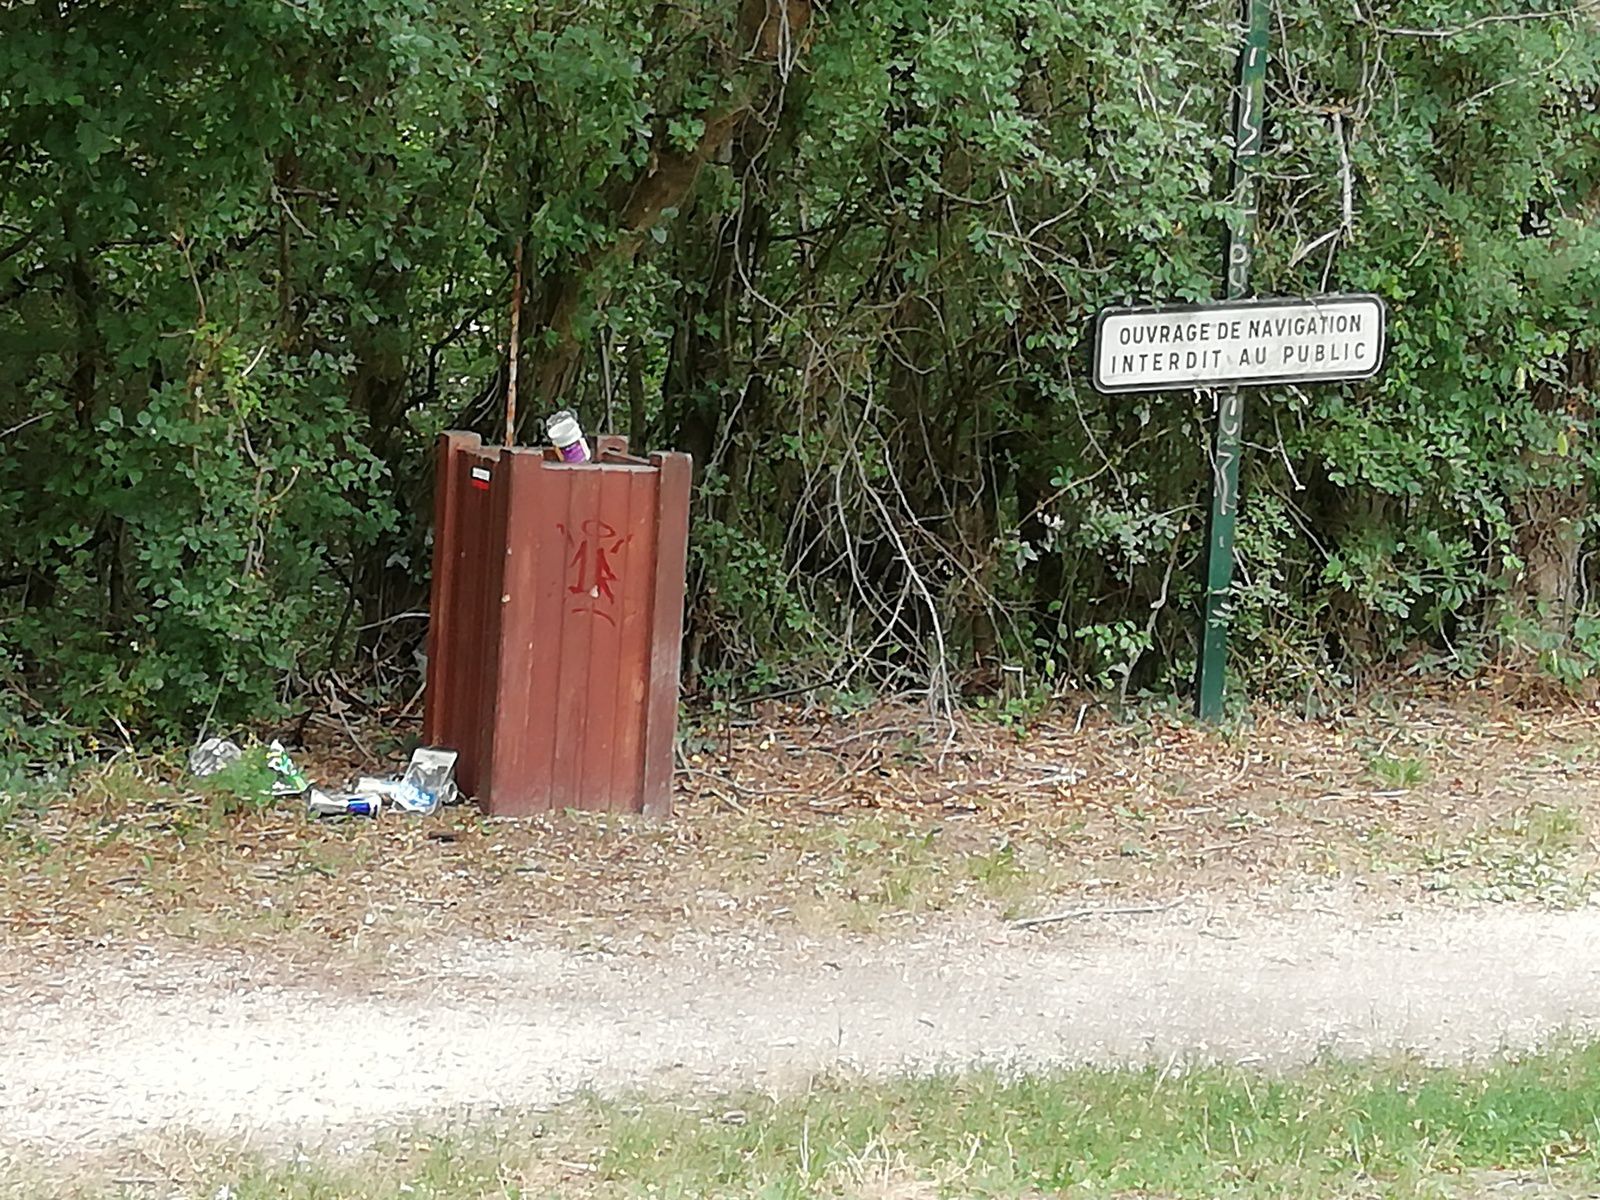 Vive le tourisme à Vierzon : pas d'eau dans le canal mais des ordures ah oui !